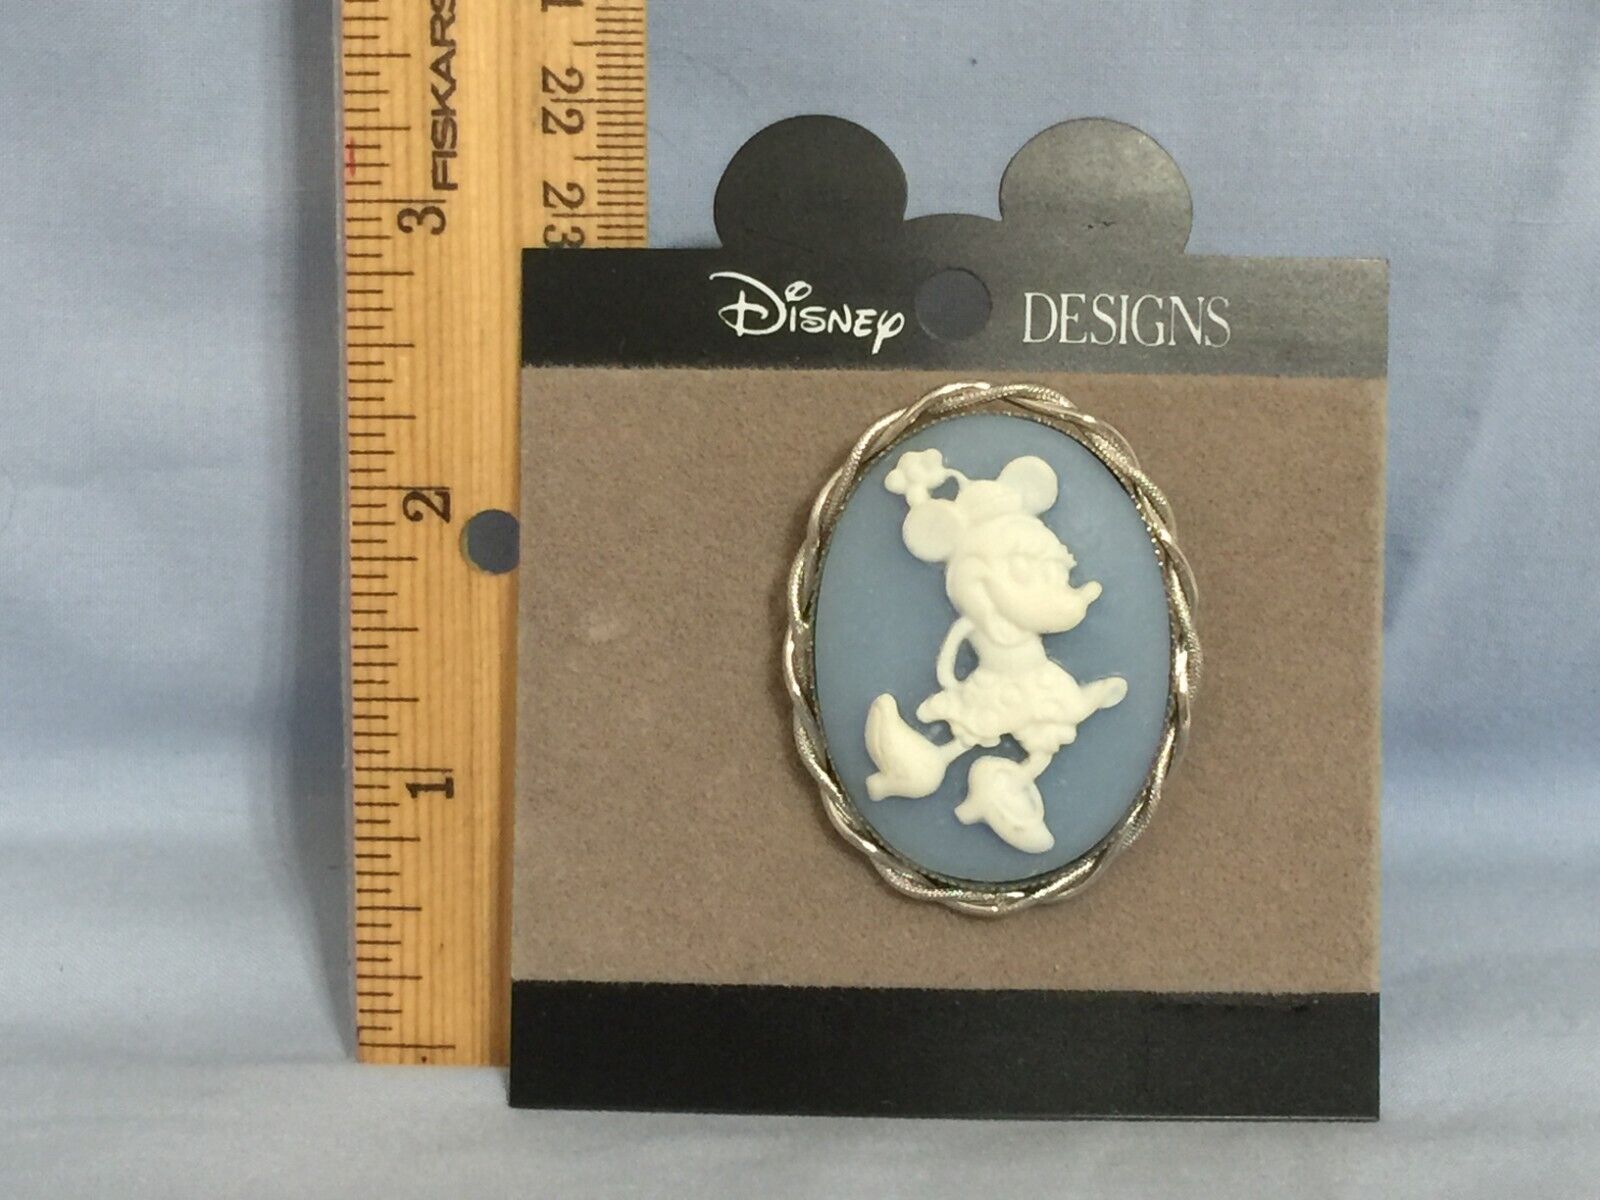 DISNEY DESIGNS MINNIE PIN / BROOCH by The Walt Disney Company     (W10)